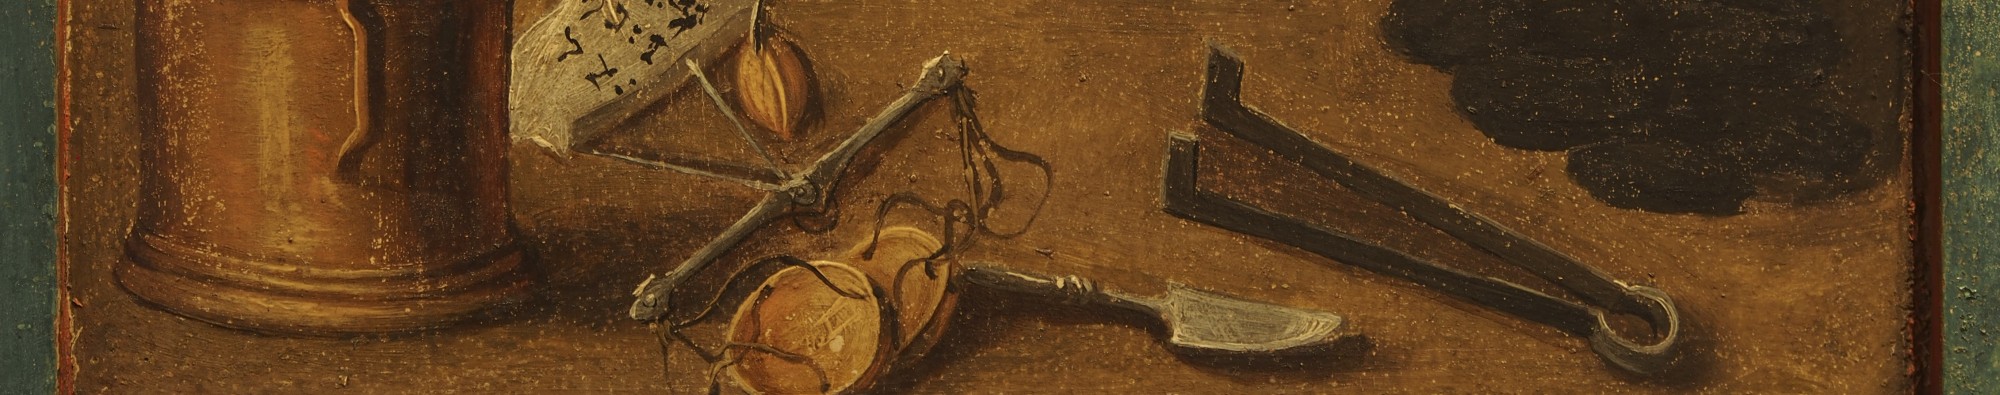 Auschnitt eines Gemäldes. Zu sehen sind eine Säule auf der linken Seite, in der Mitte eine Waage mit Waagschalen und eine Schaufel.